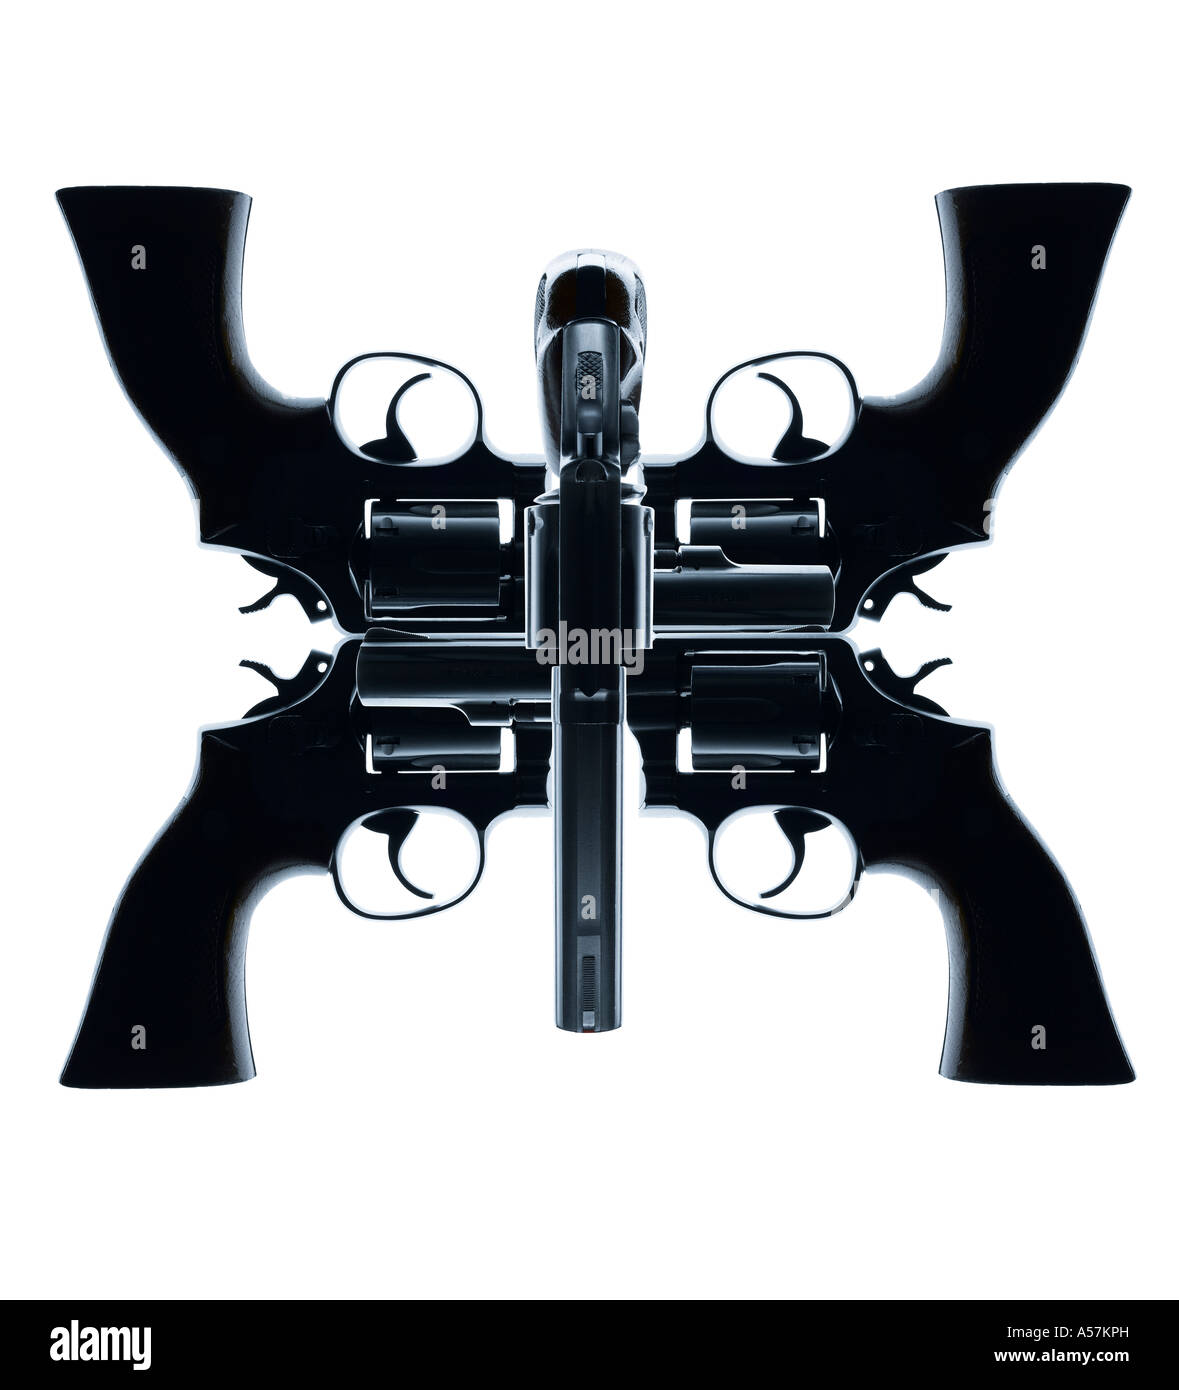 Cinq pistolets placés de manière créative pour créer un visage ou de forme intéressante Banque D'Images